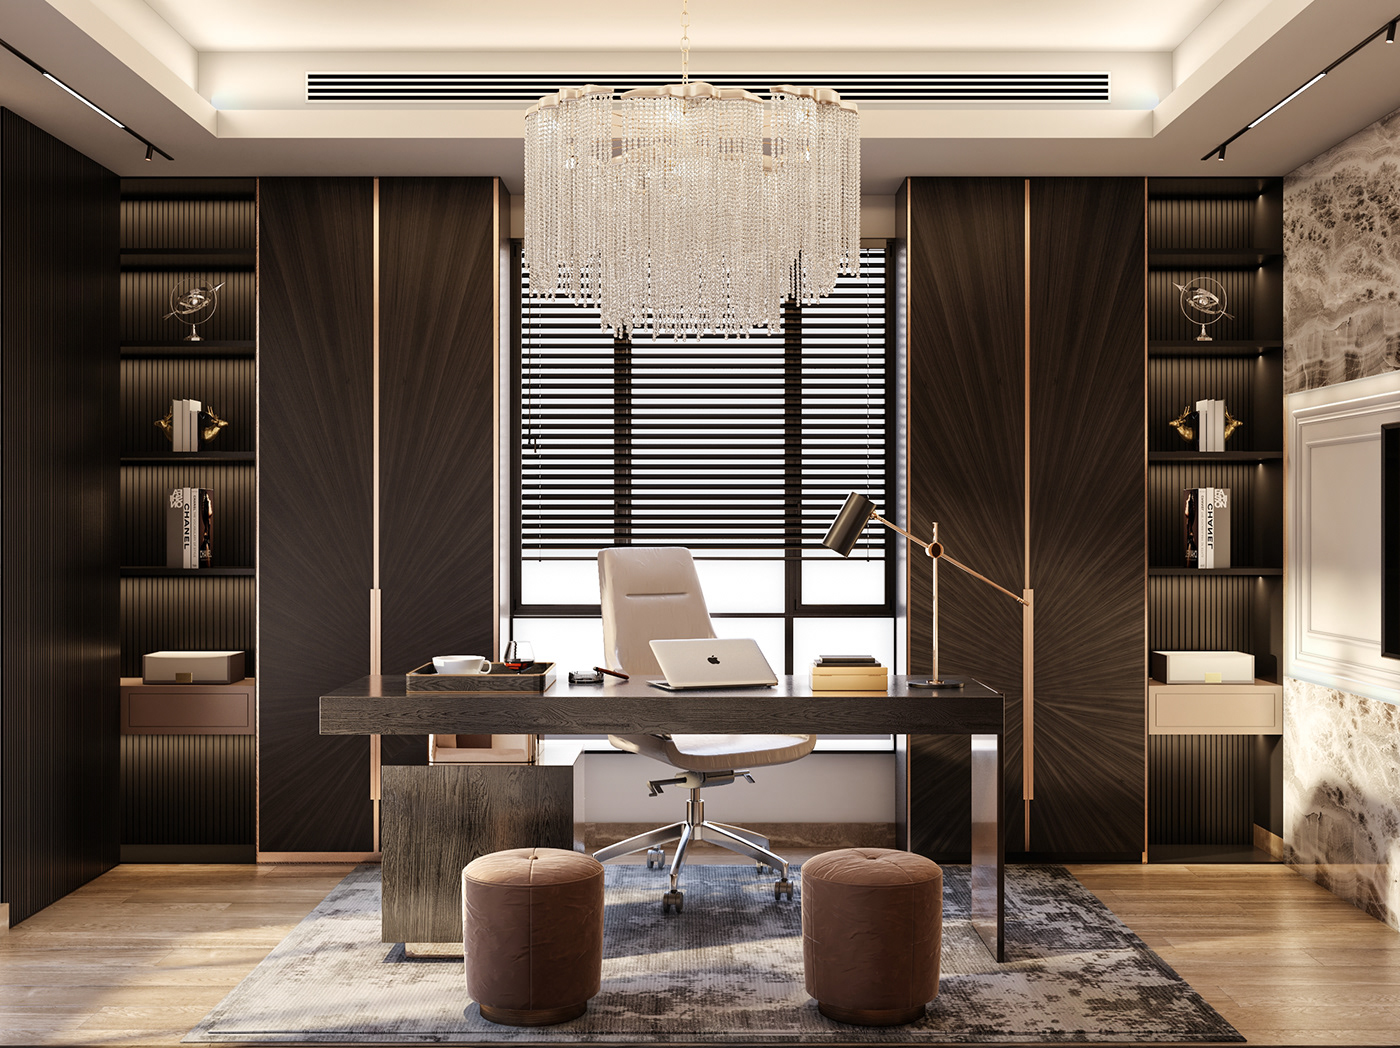 interior design  Office Design Interior design office furniture desk modern luxury interiordesign architecture